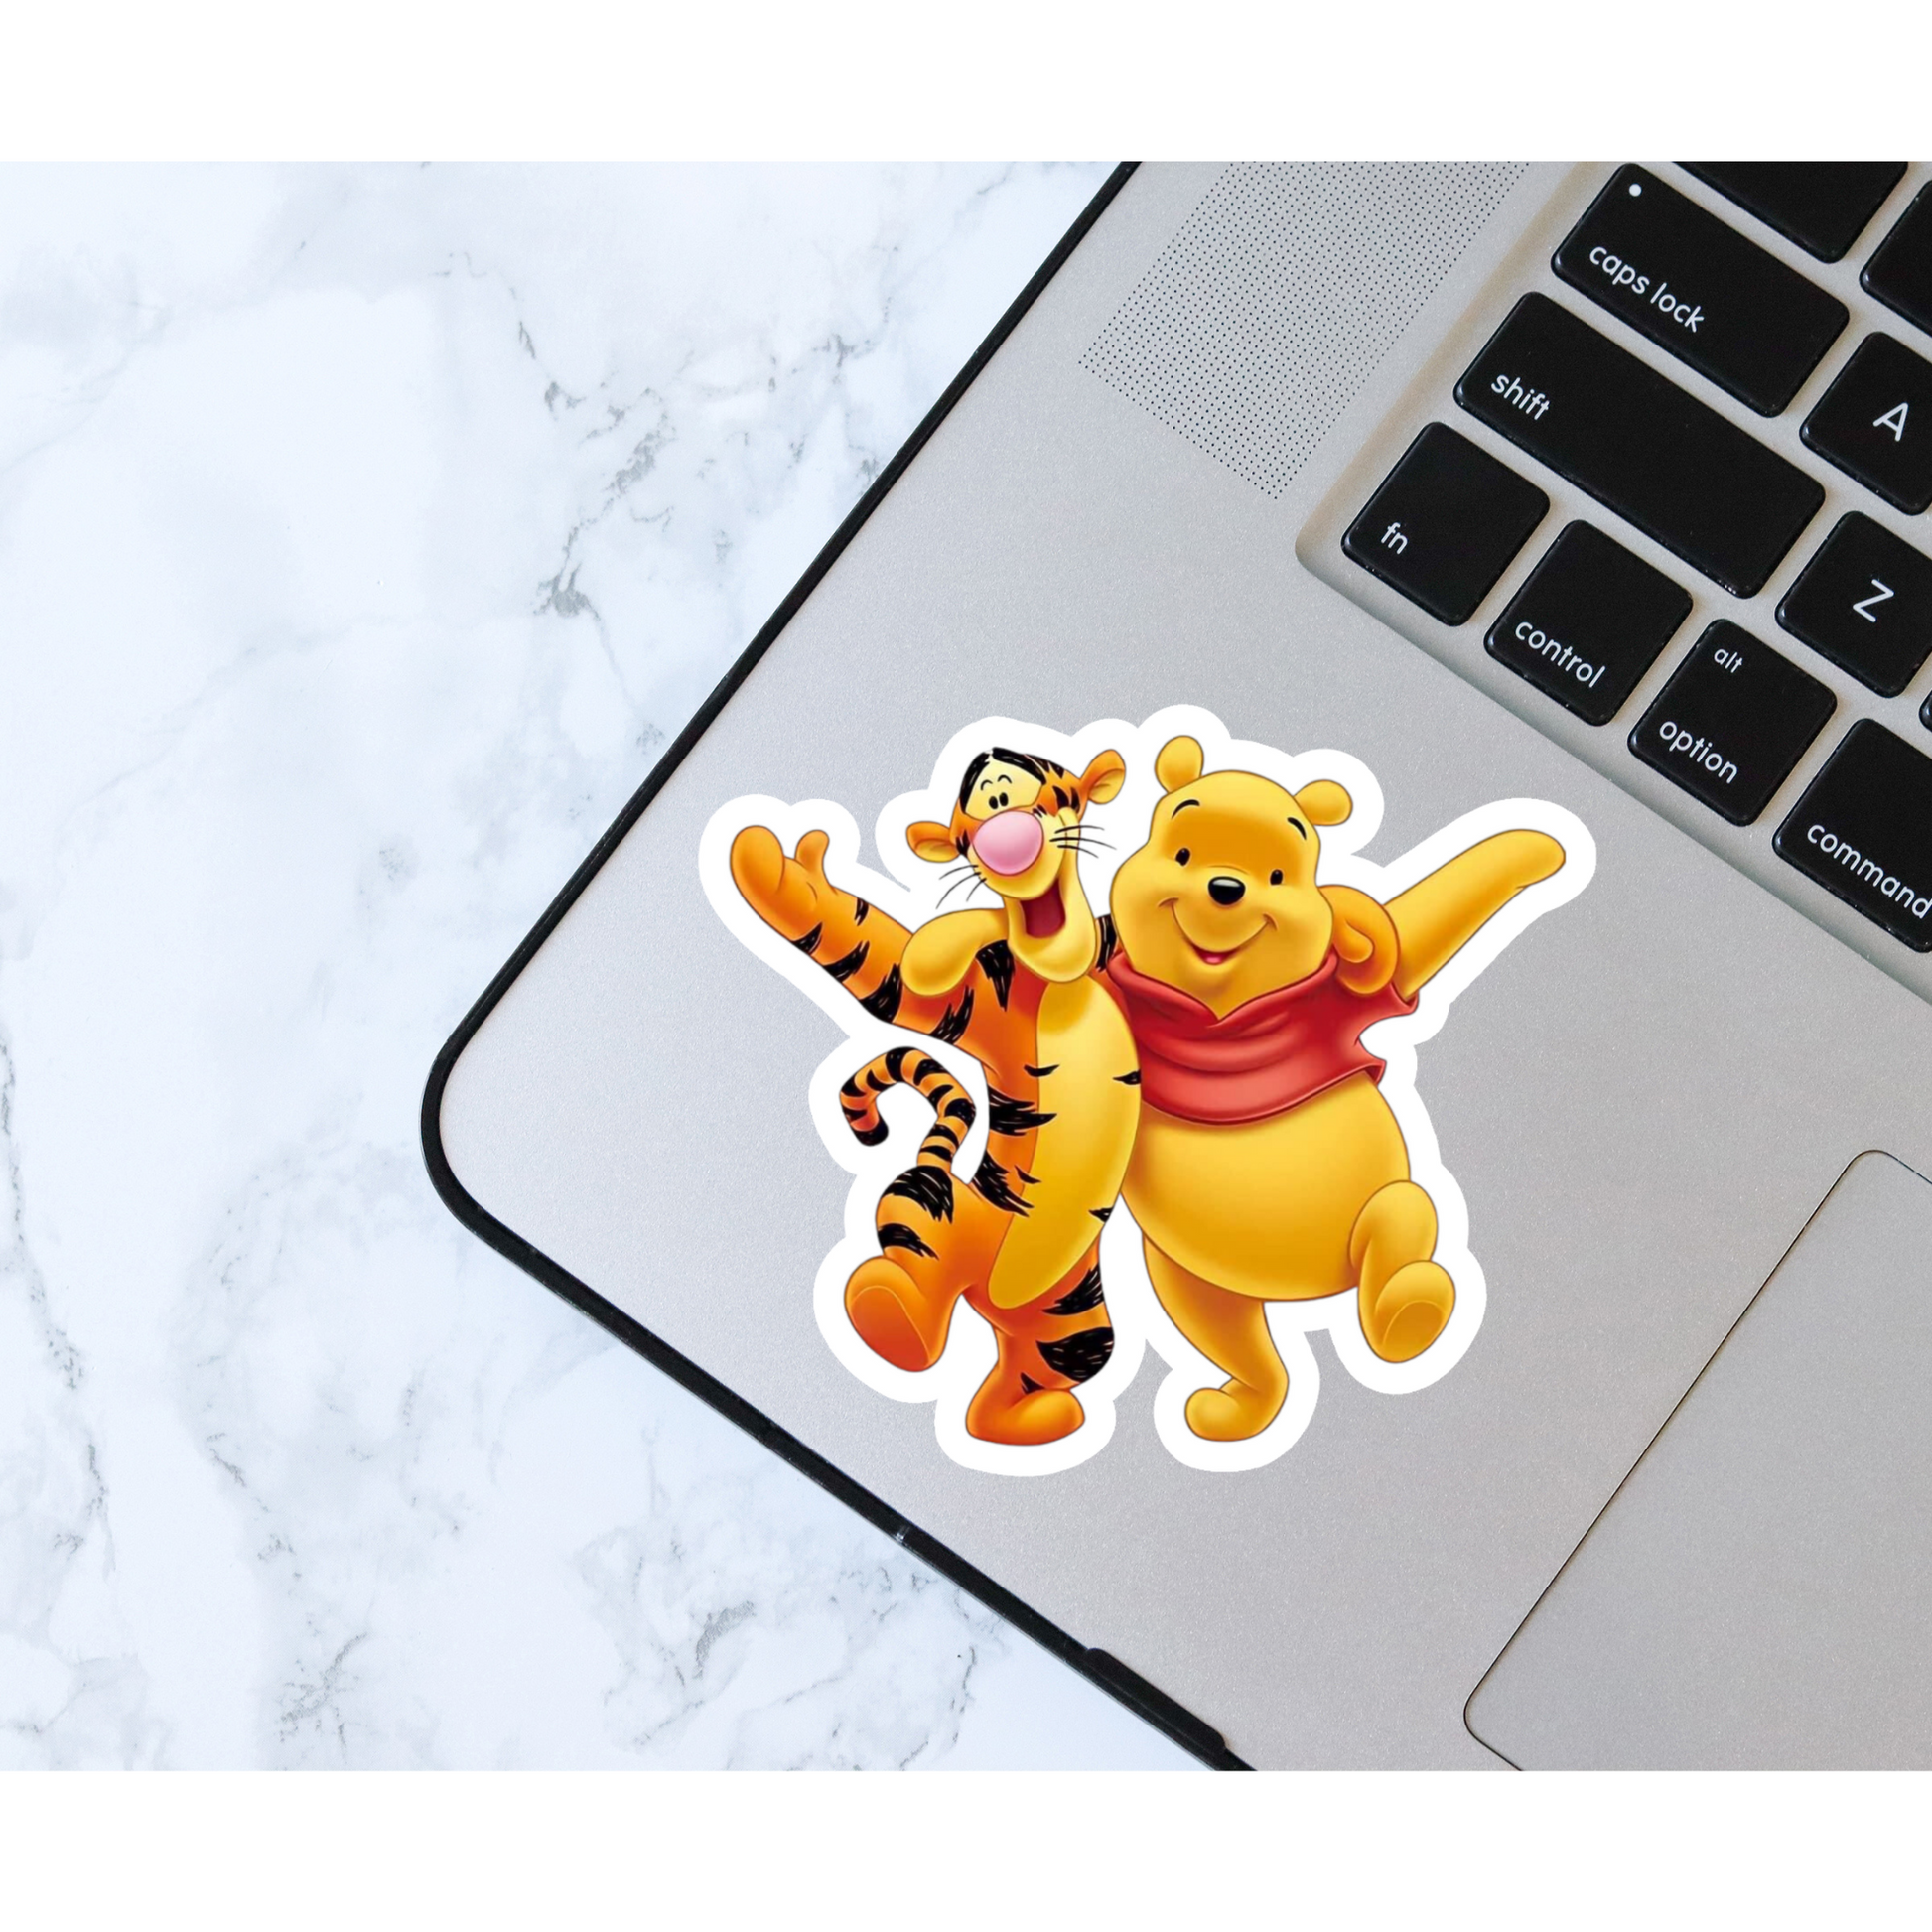 Winnie the Pooh and Friends Premium Vinyl Sticker